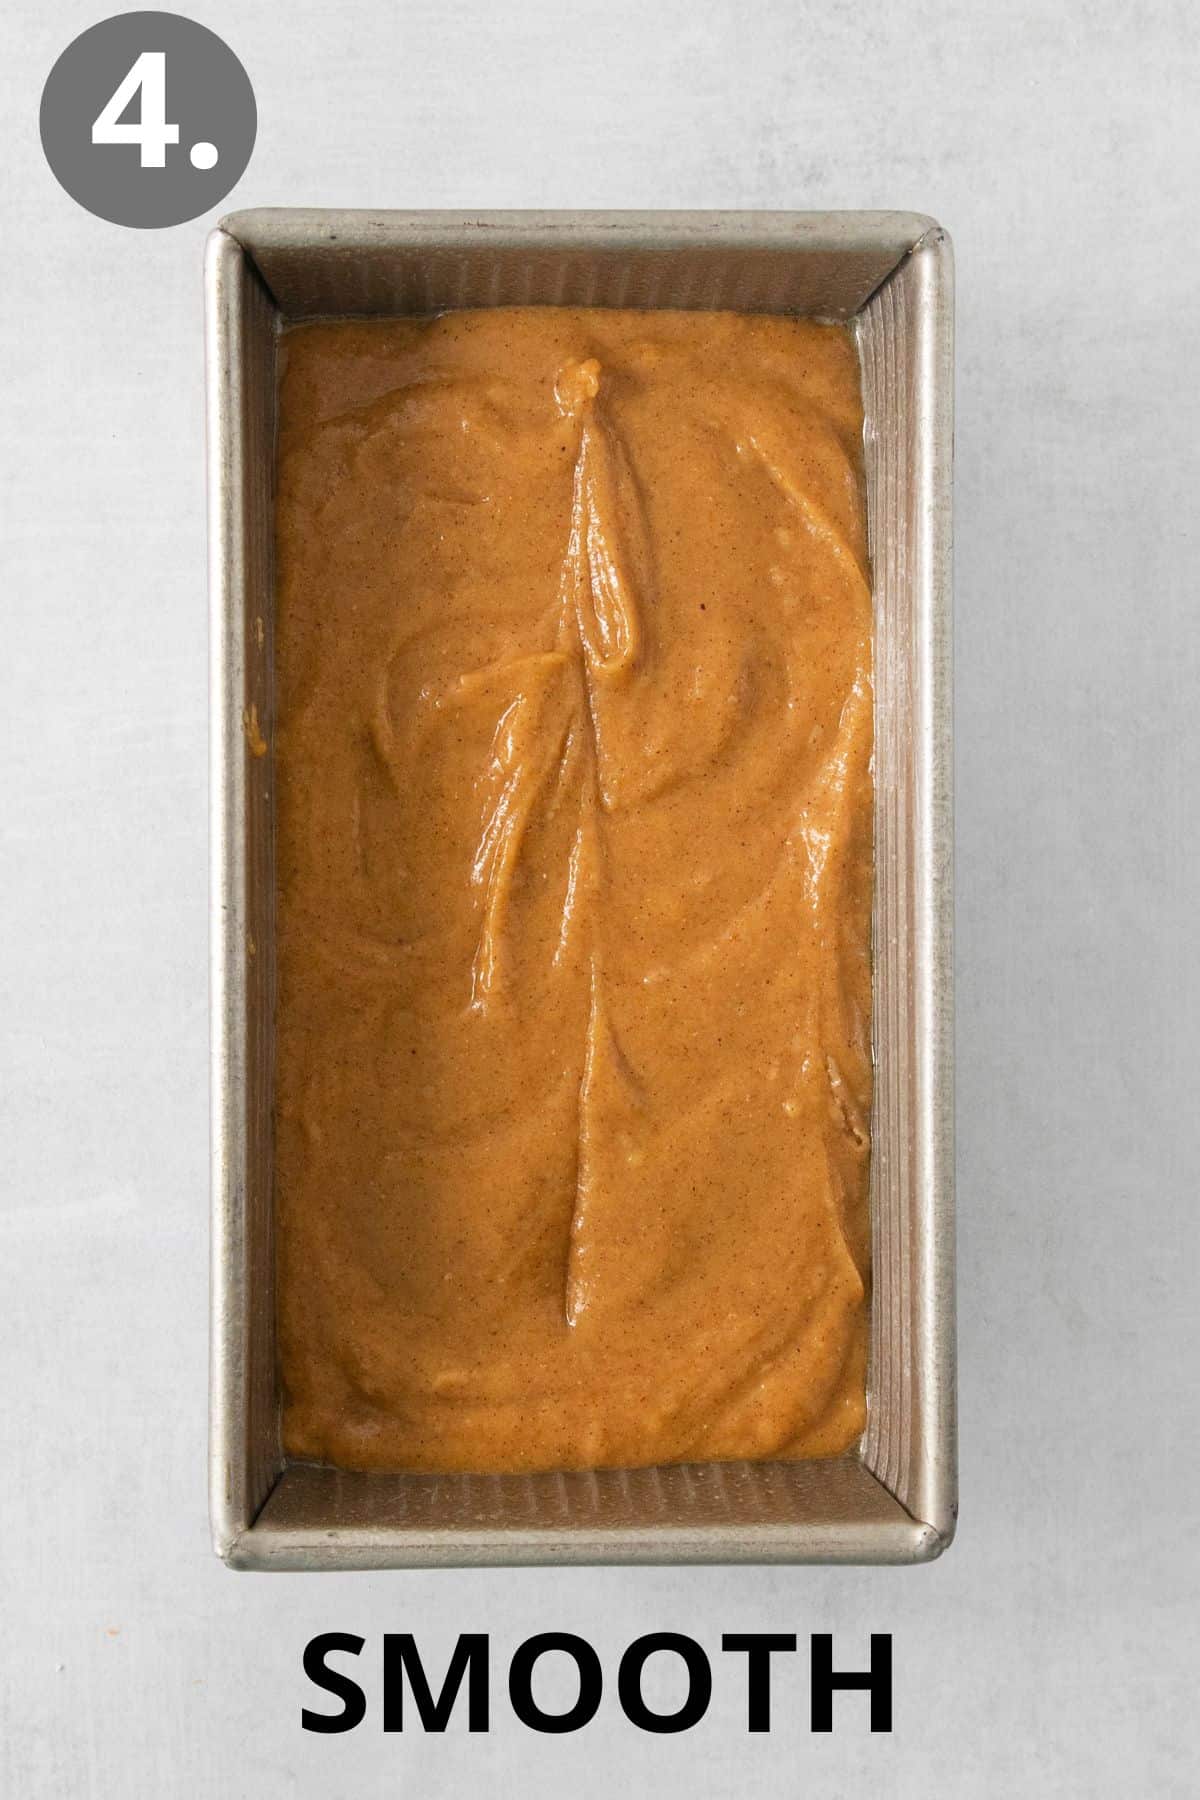 Gluten-free pumpkin bread batter in a loaf pan